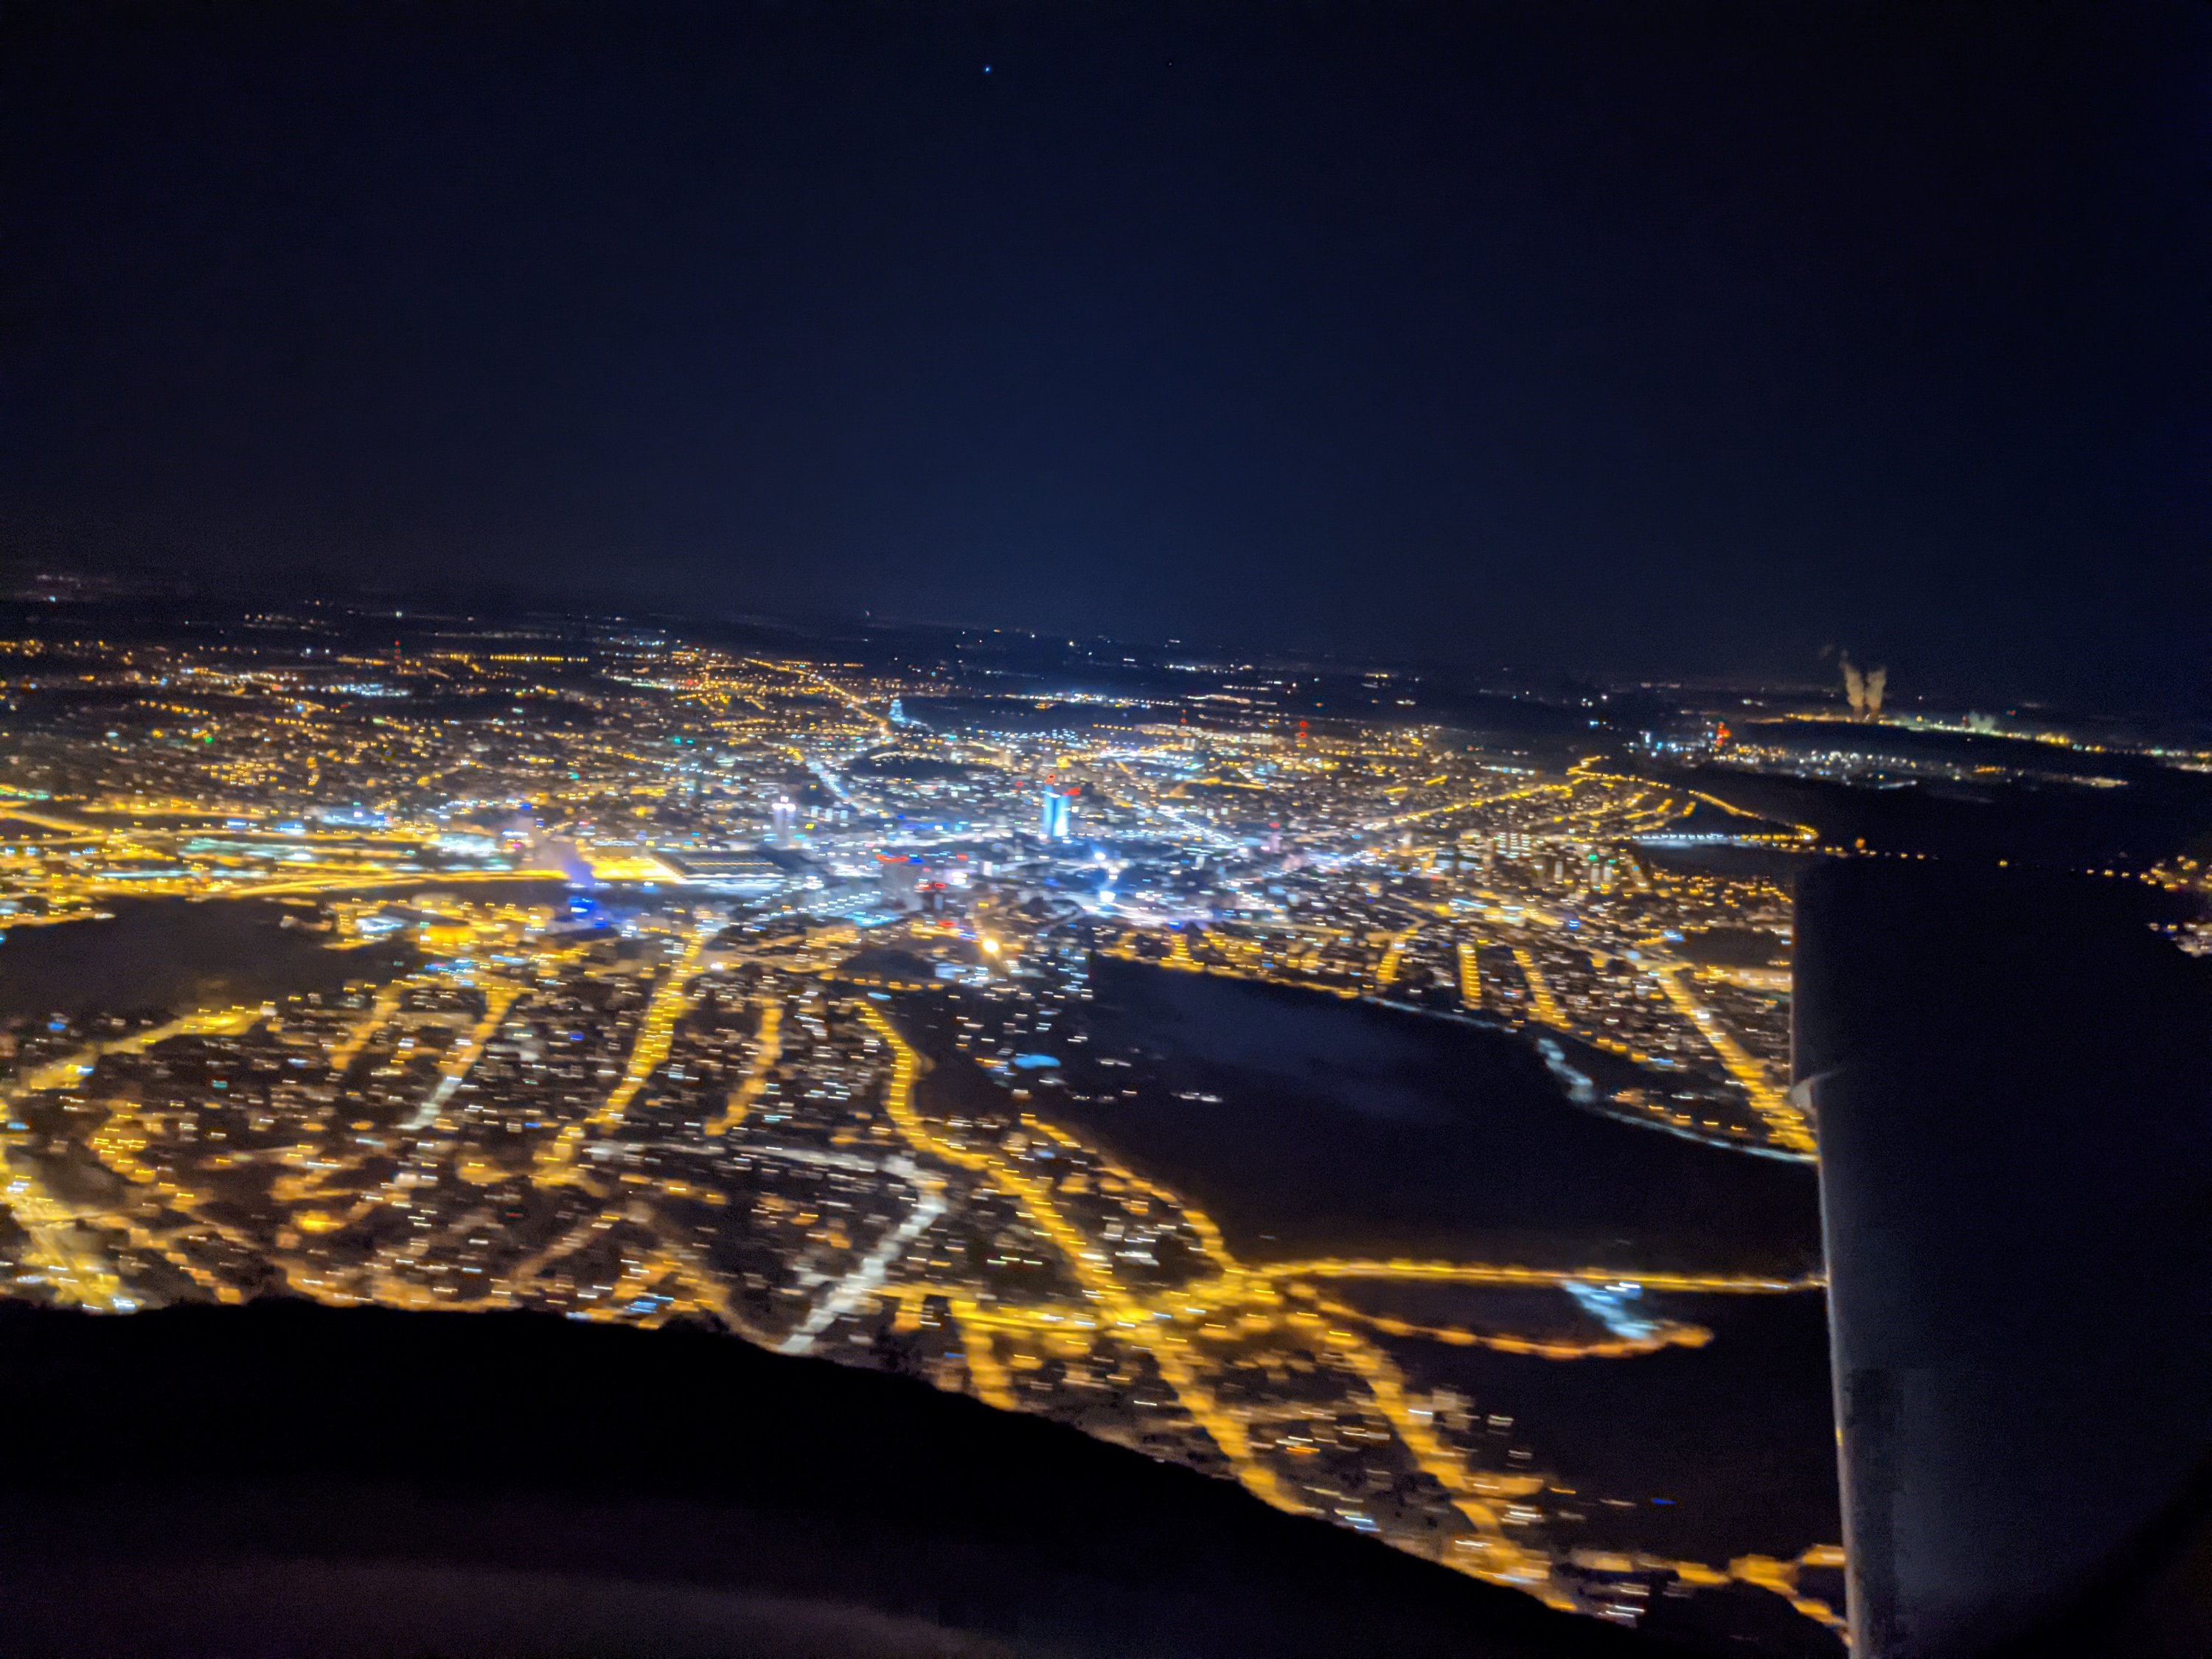 Nachtflugausbildung: aus der Cirrus über Leipzig, MDR-Tower deutlich sichtbar / Bild-Quelle: privat